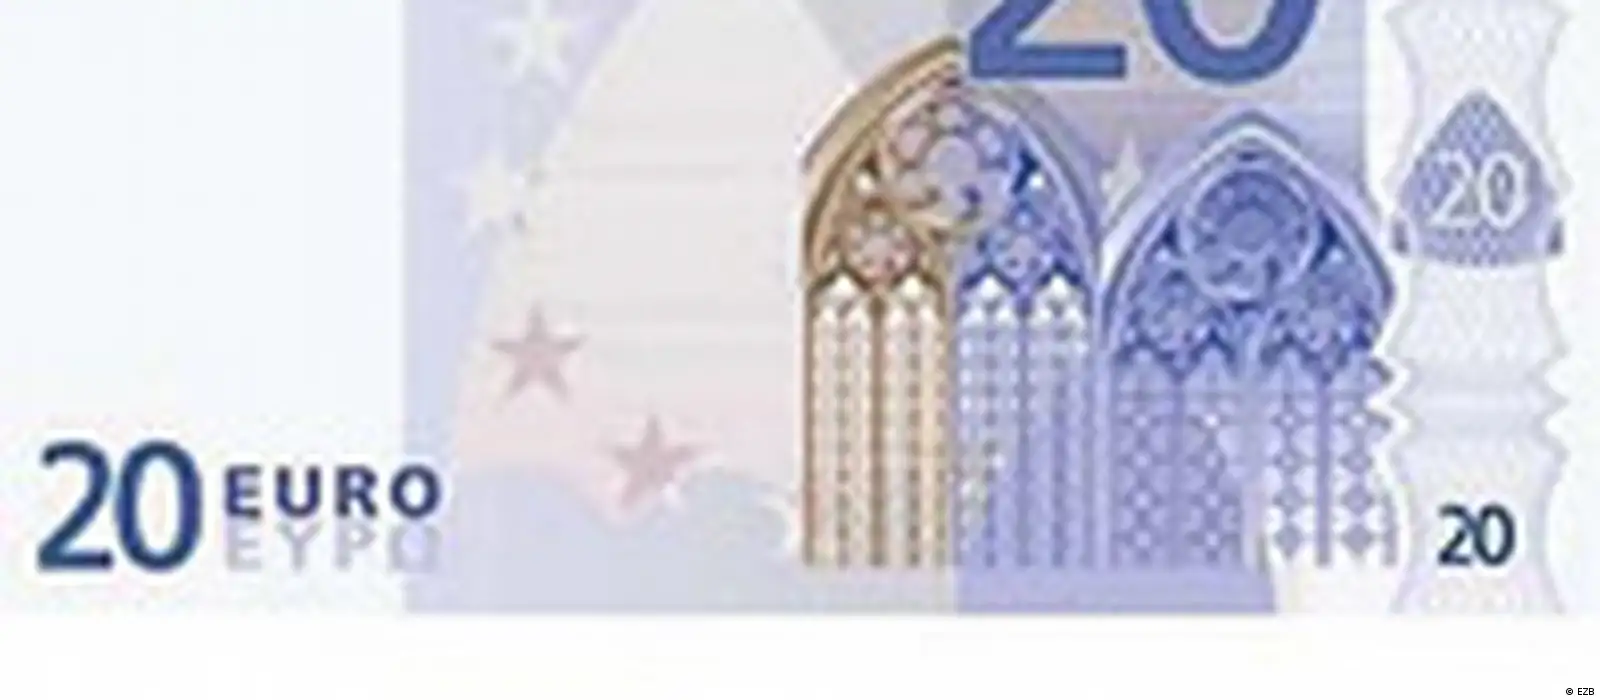 Fragen zu den Euro-Scheinen und Euro-Münzen – DW – 02.01.2002